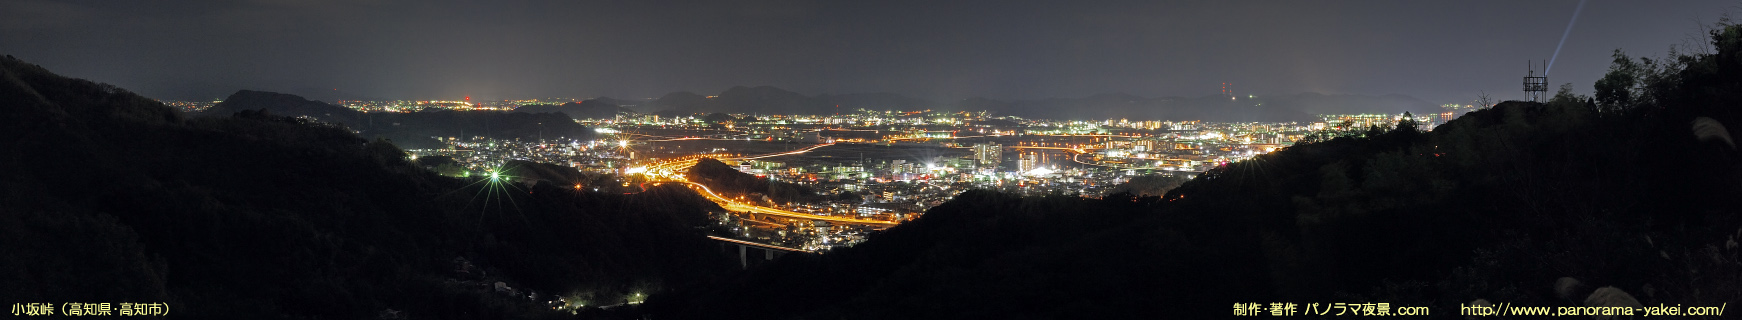 小坂峠付近「見晴らしバス停」からのパノラマ夜景写真